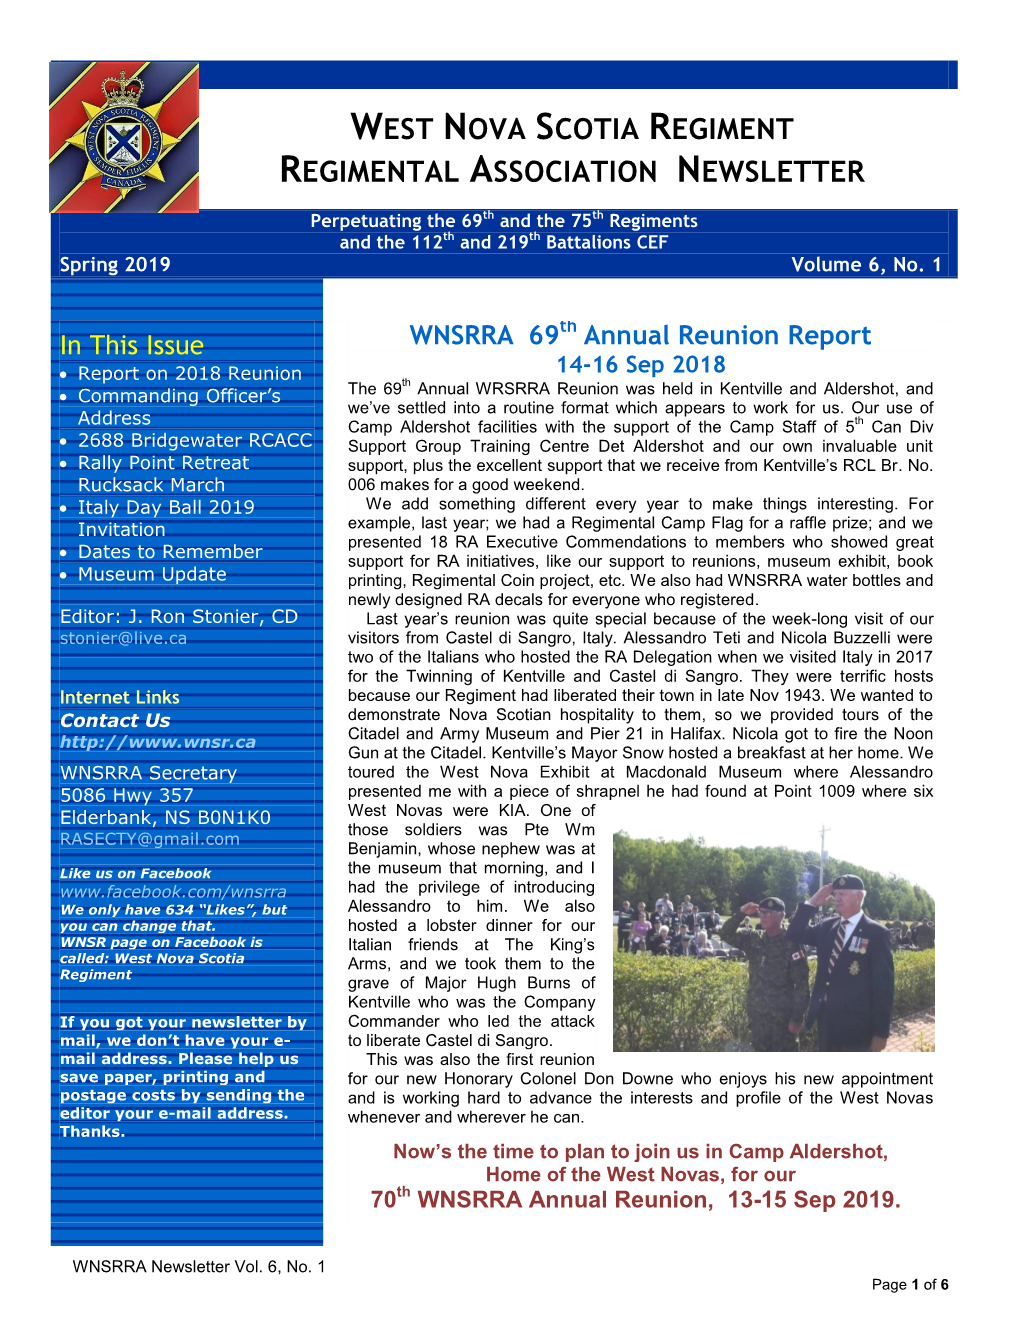 West Nova Scotia Regiment Regimental Association